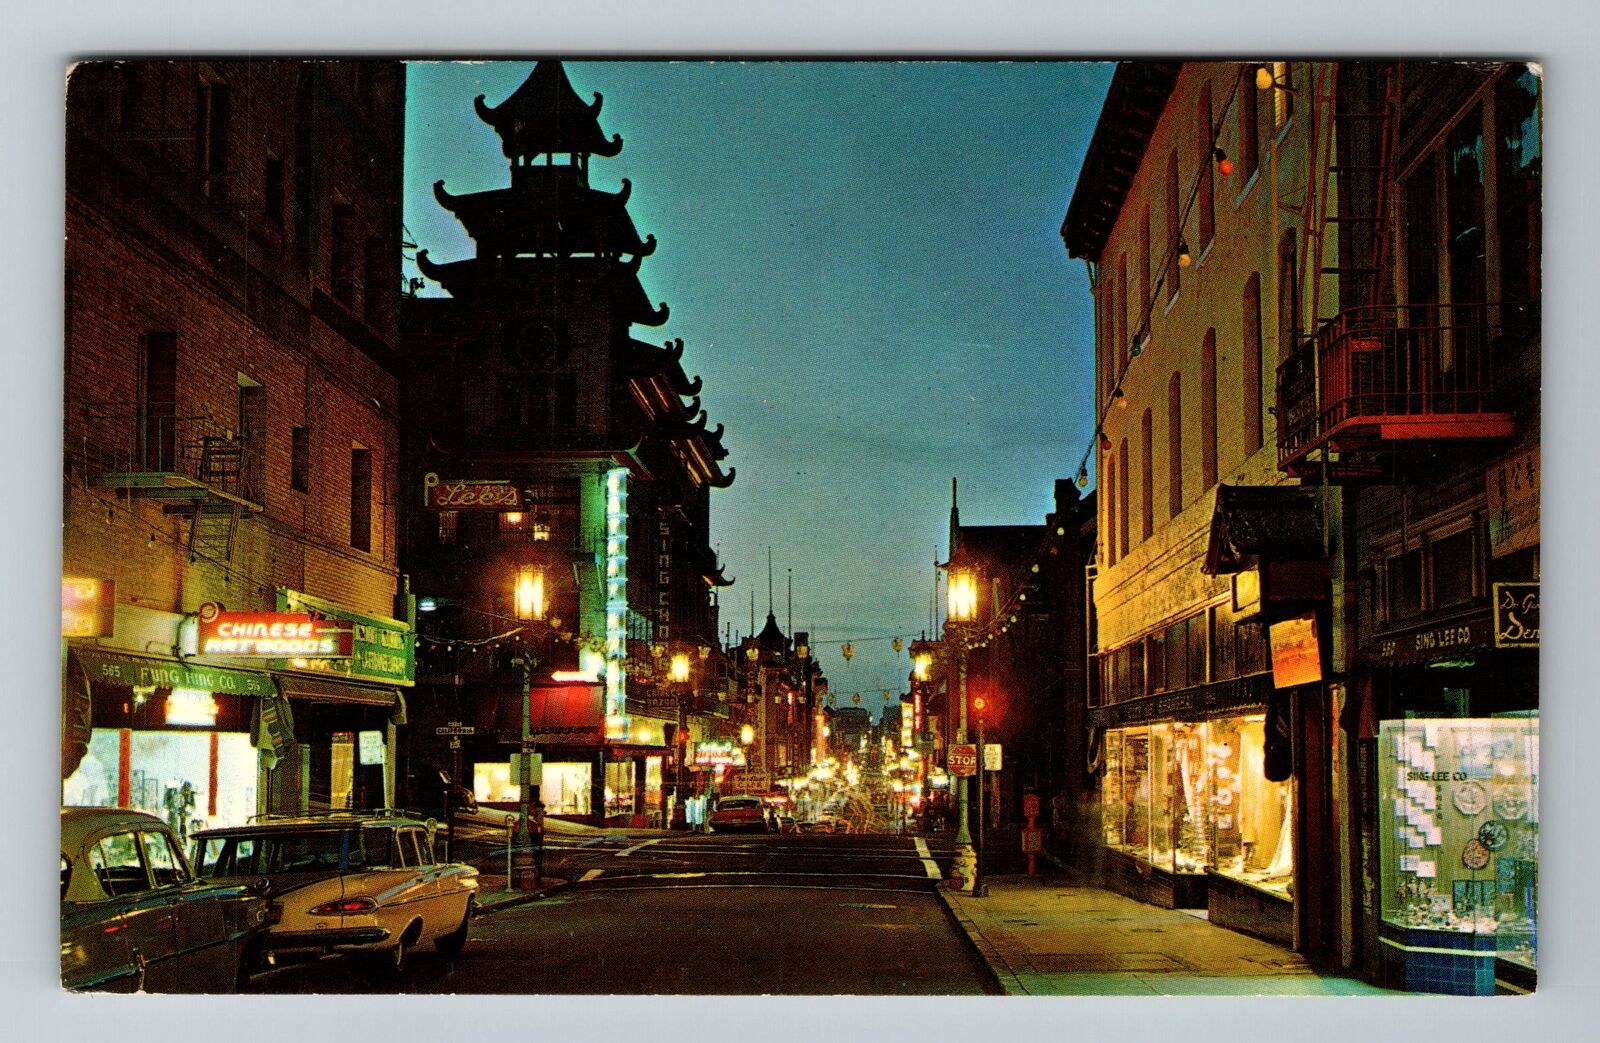 San Francisco CA-California, Chinatown at Night, Vintage Postcard